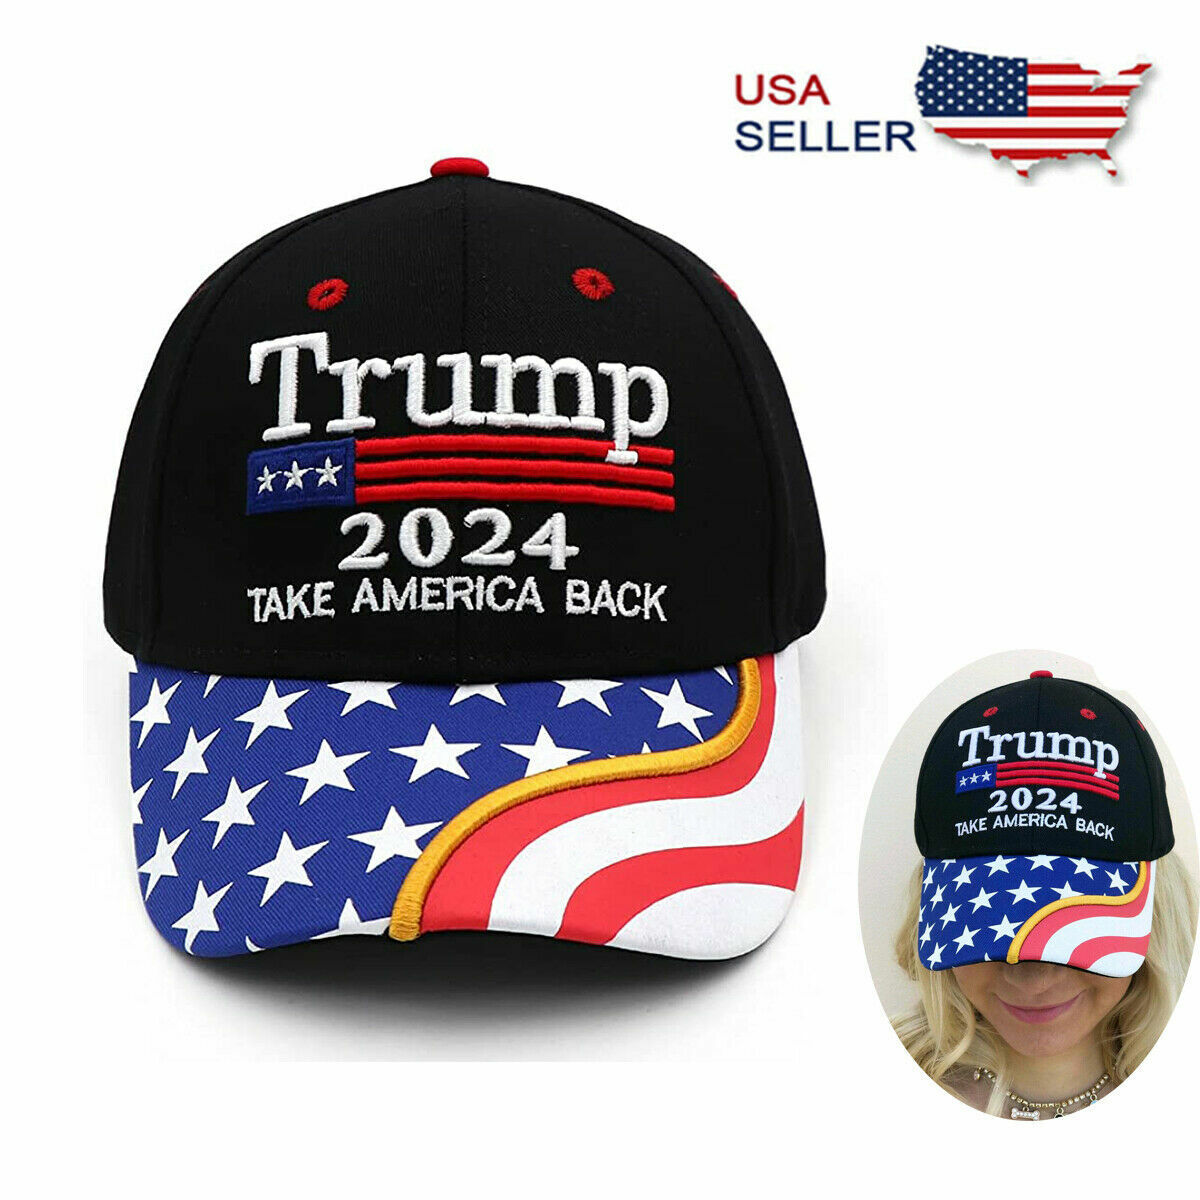 Donald Trump Hat Make America Great Again 2024 Campaign Republican Black Cap USA